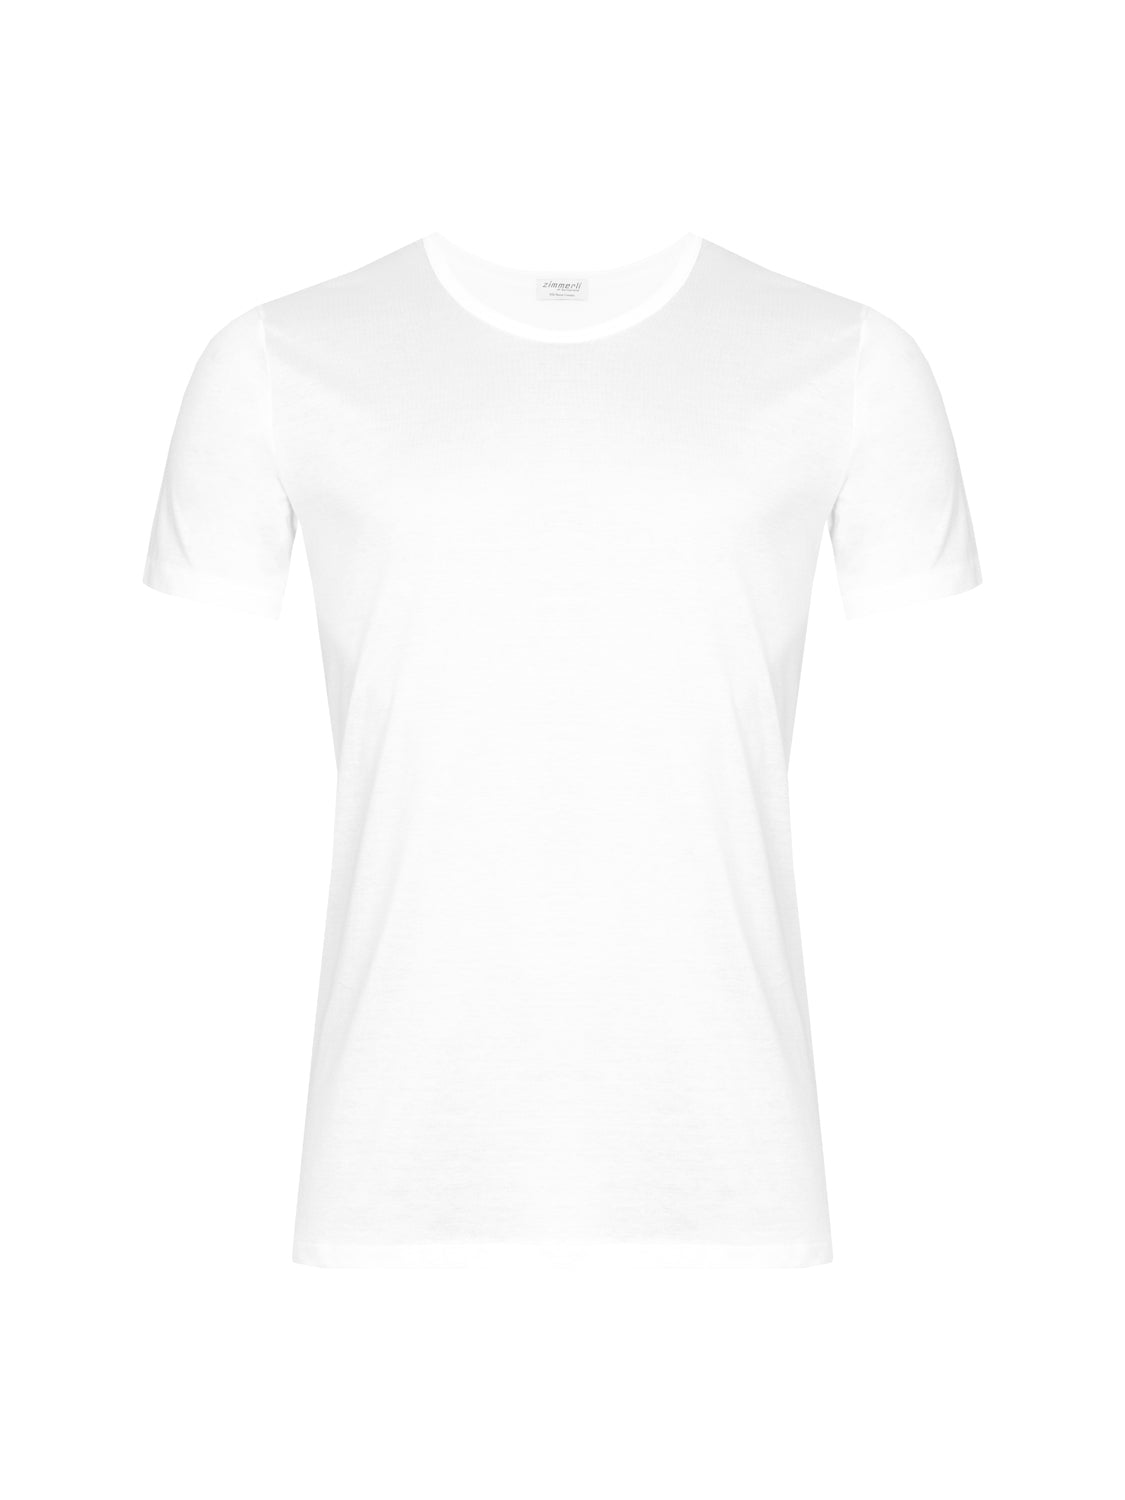 Royal Classic T-Shirt Kurzarm - Weiß